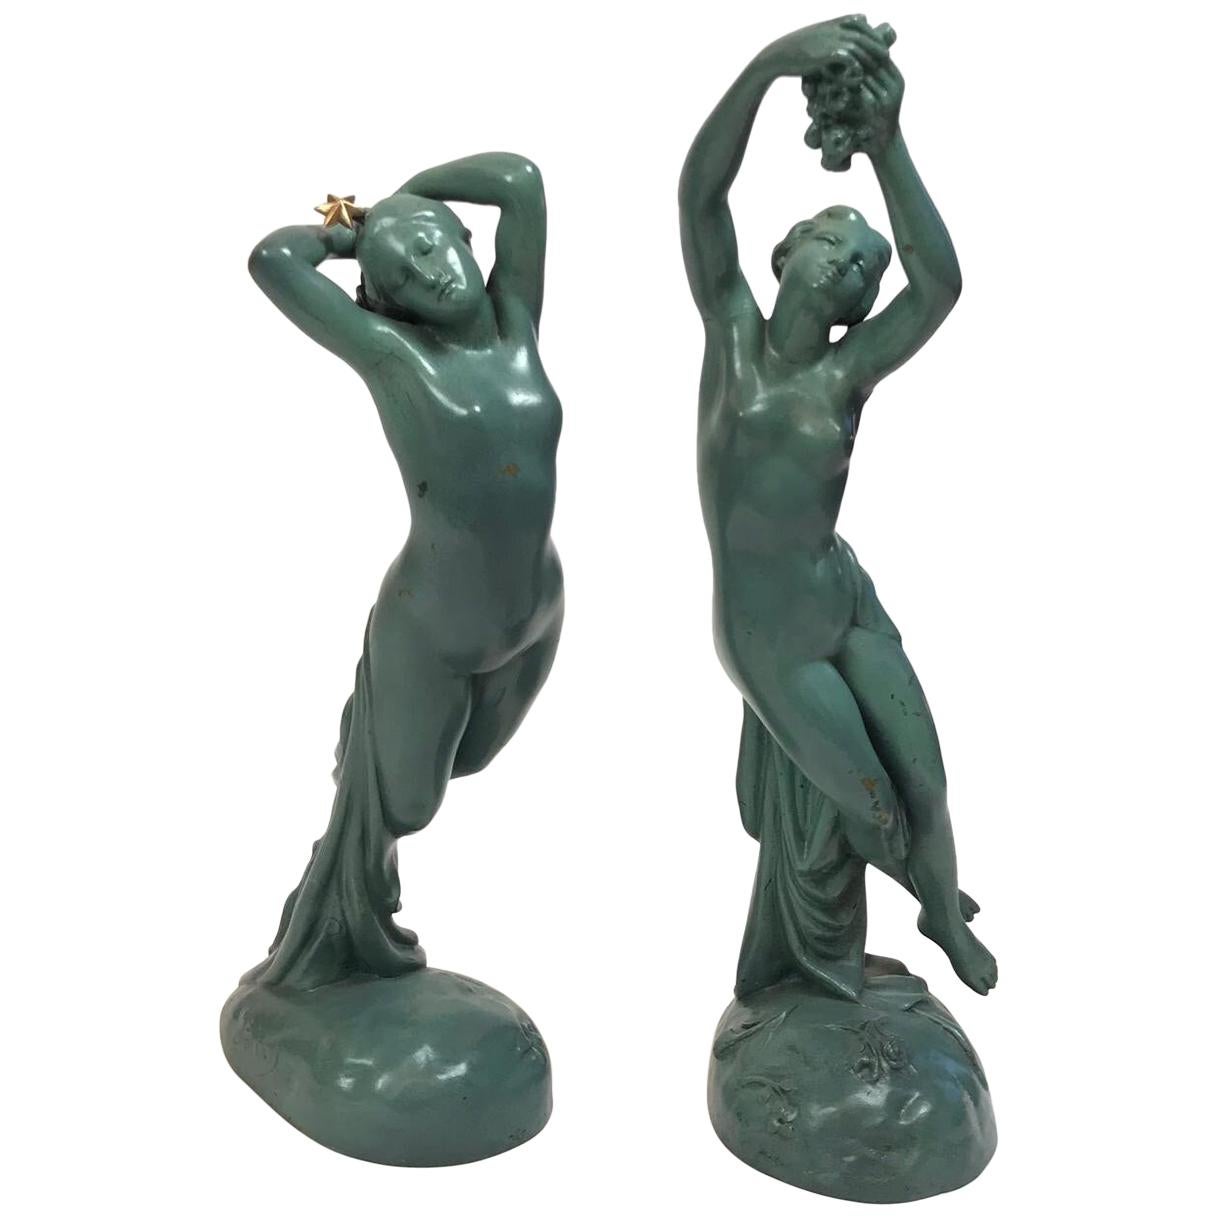 Joseph Michel-Ange Pollet 2 Bronze Figures, "Une Heure De La Nuit" For Sale